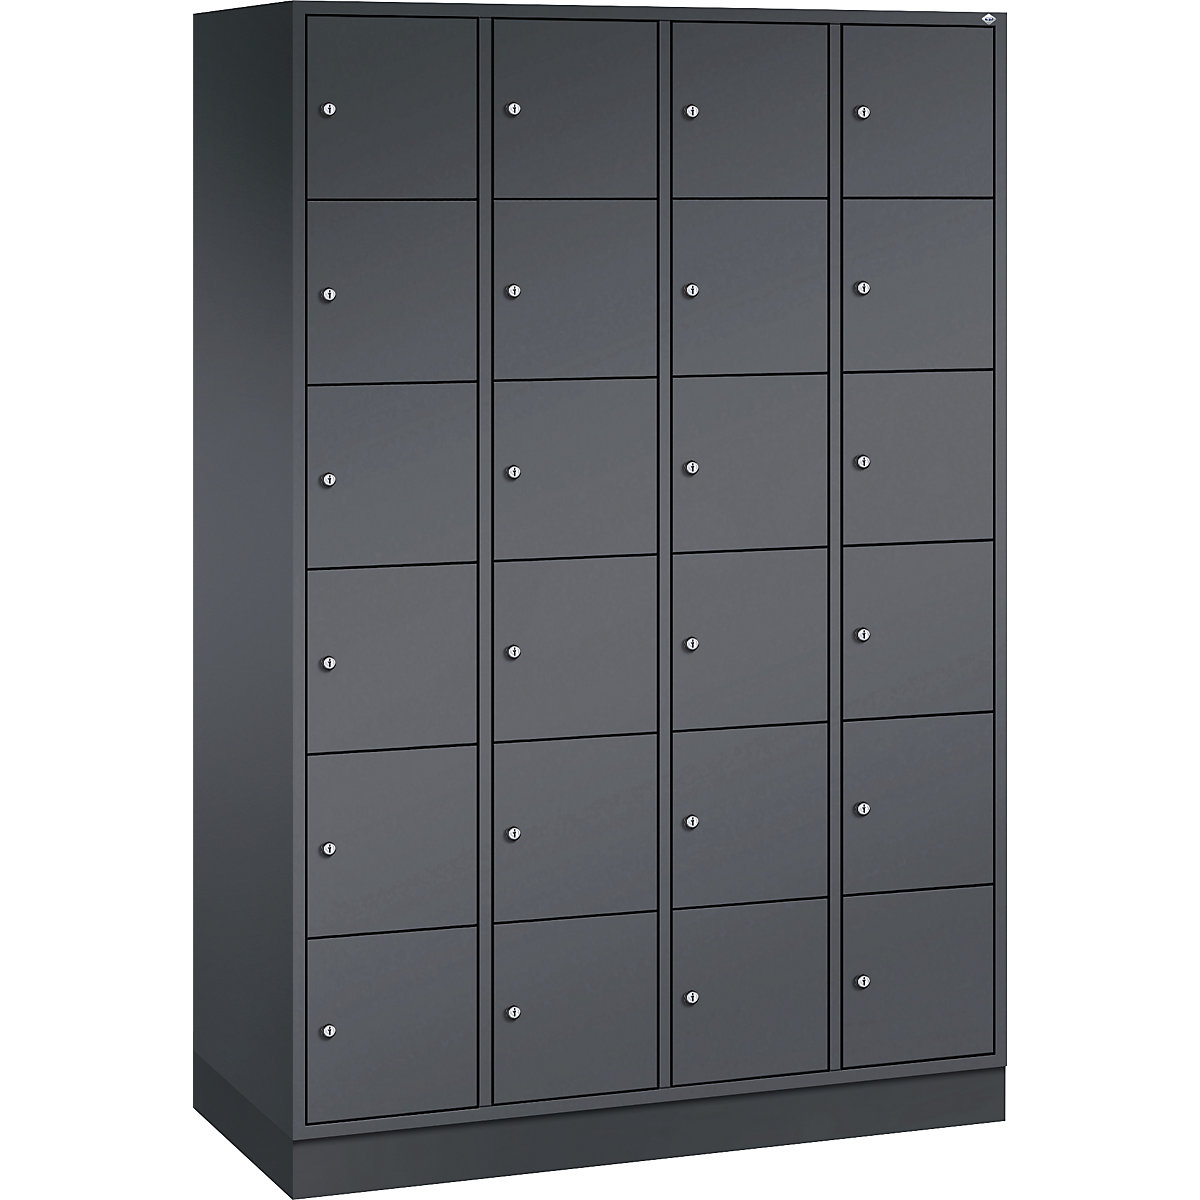 Vestiaire multicases en acier INTRO, casiers hauteur 285 mm – C+P, l x p 1220 x 500 mm, 24 casiers, corps gris noir, portes gris noir-5